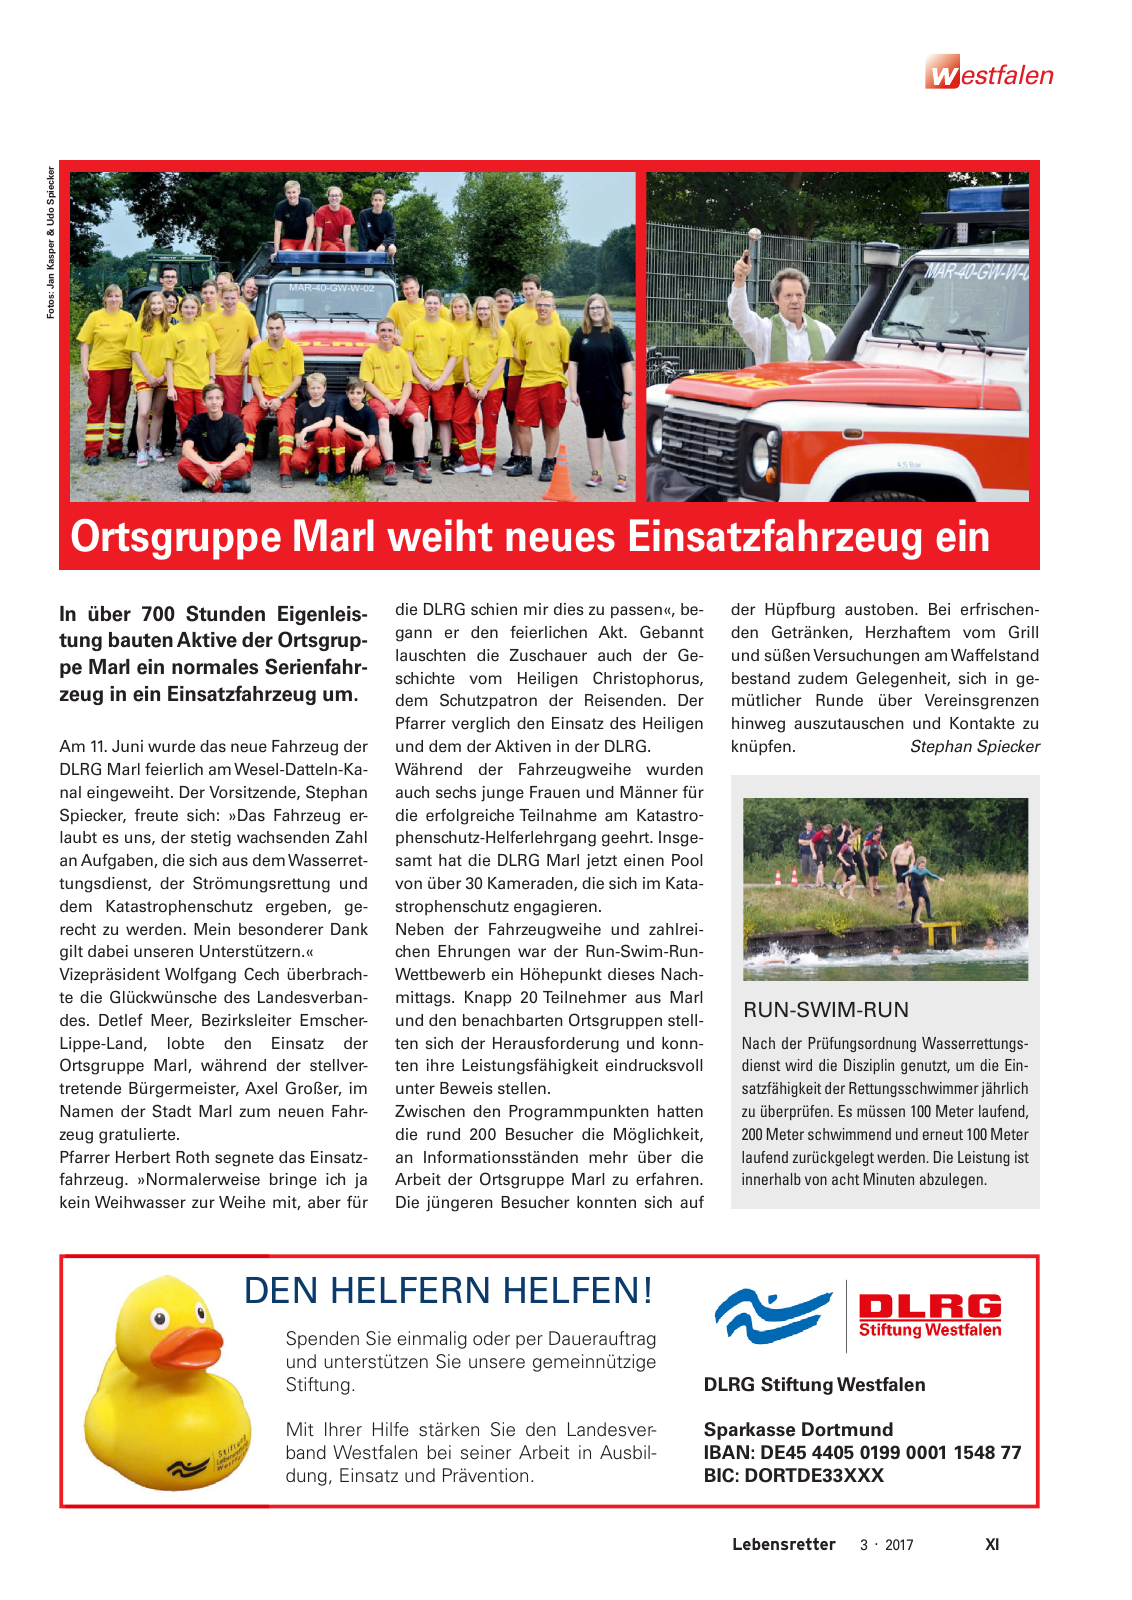 Vorschau Lebensretter 3/2017 - Regionalausgabe Westfalen Seite 13